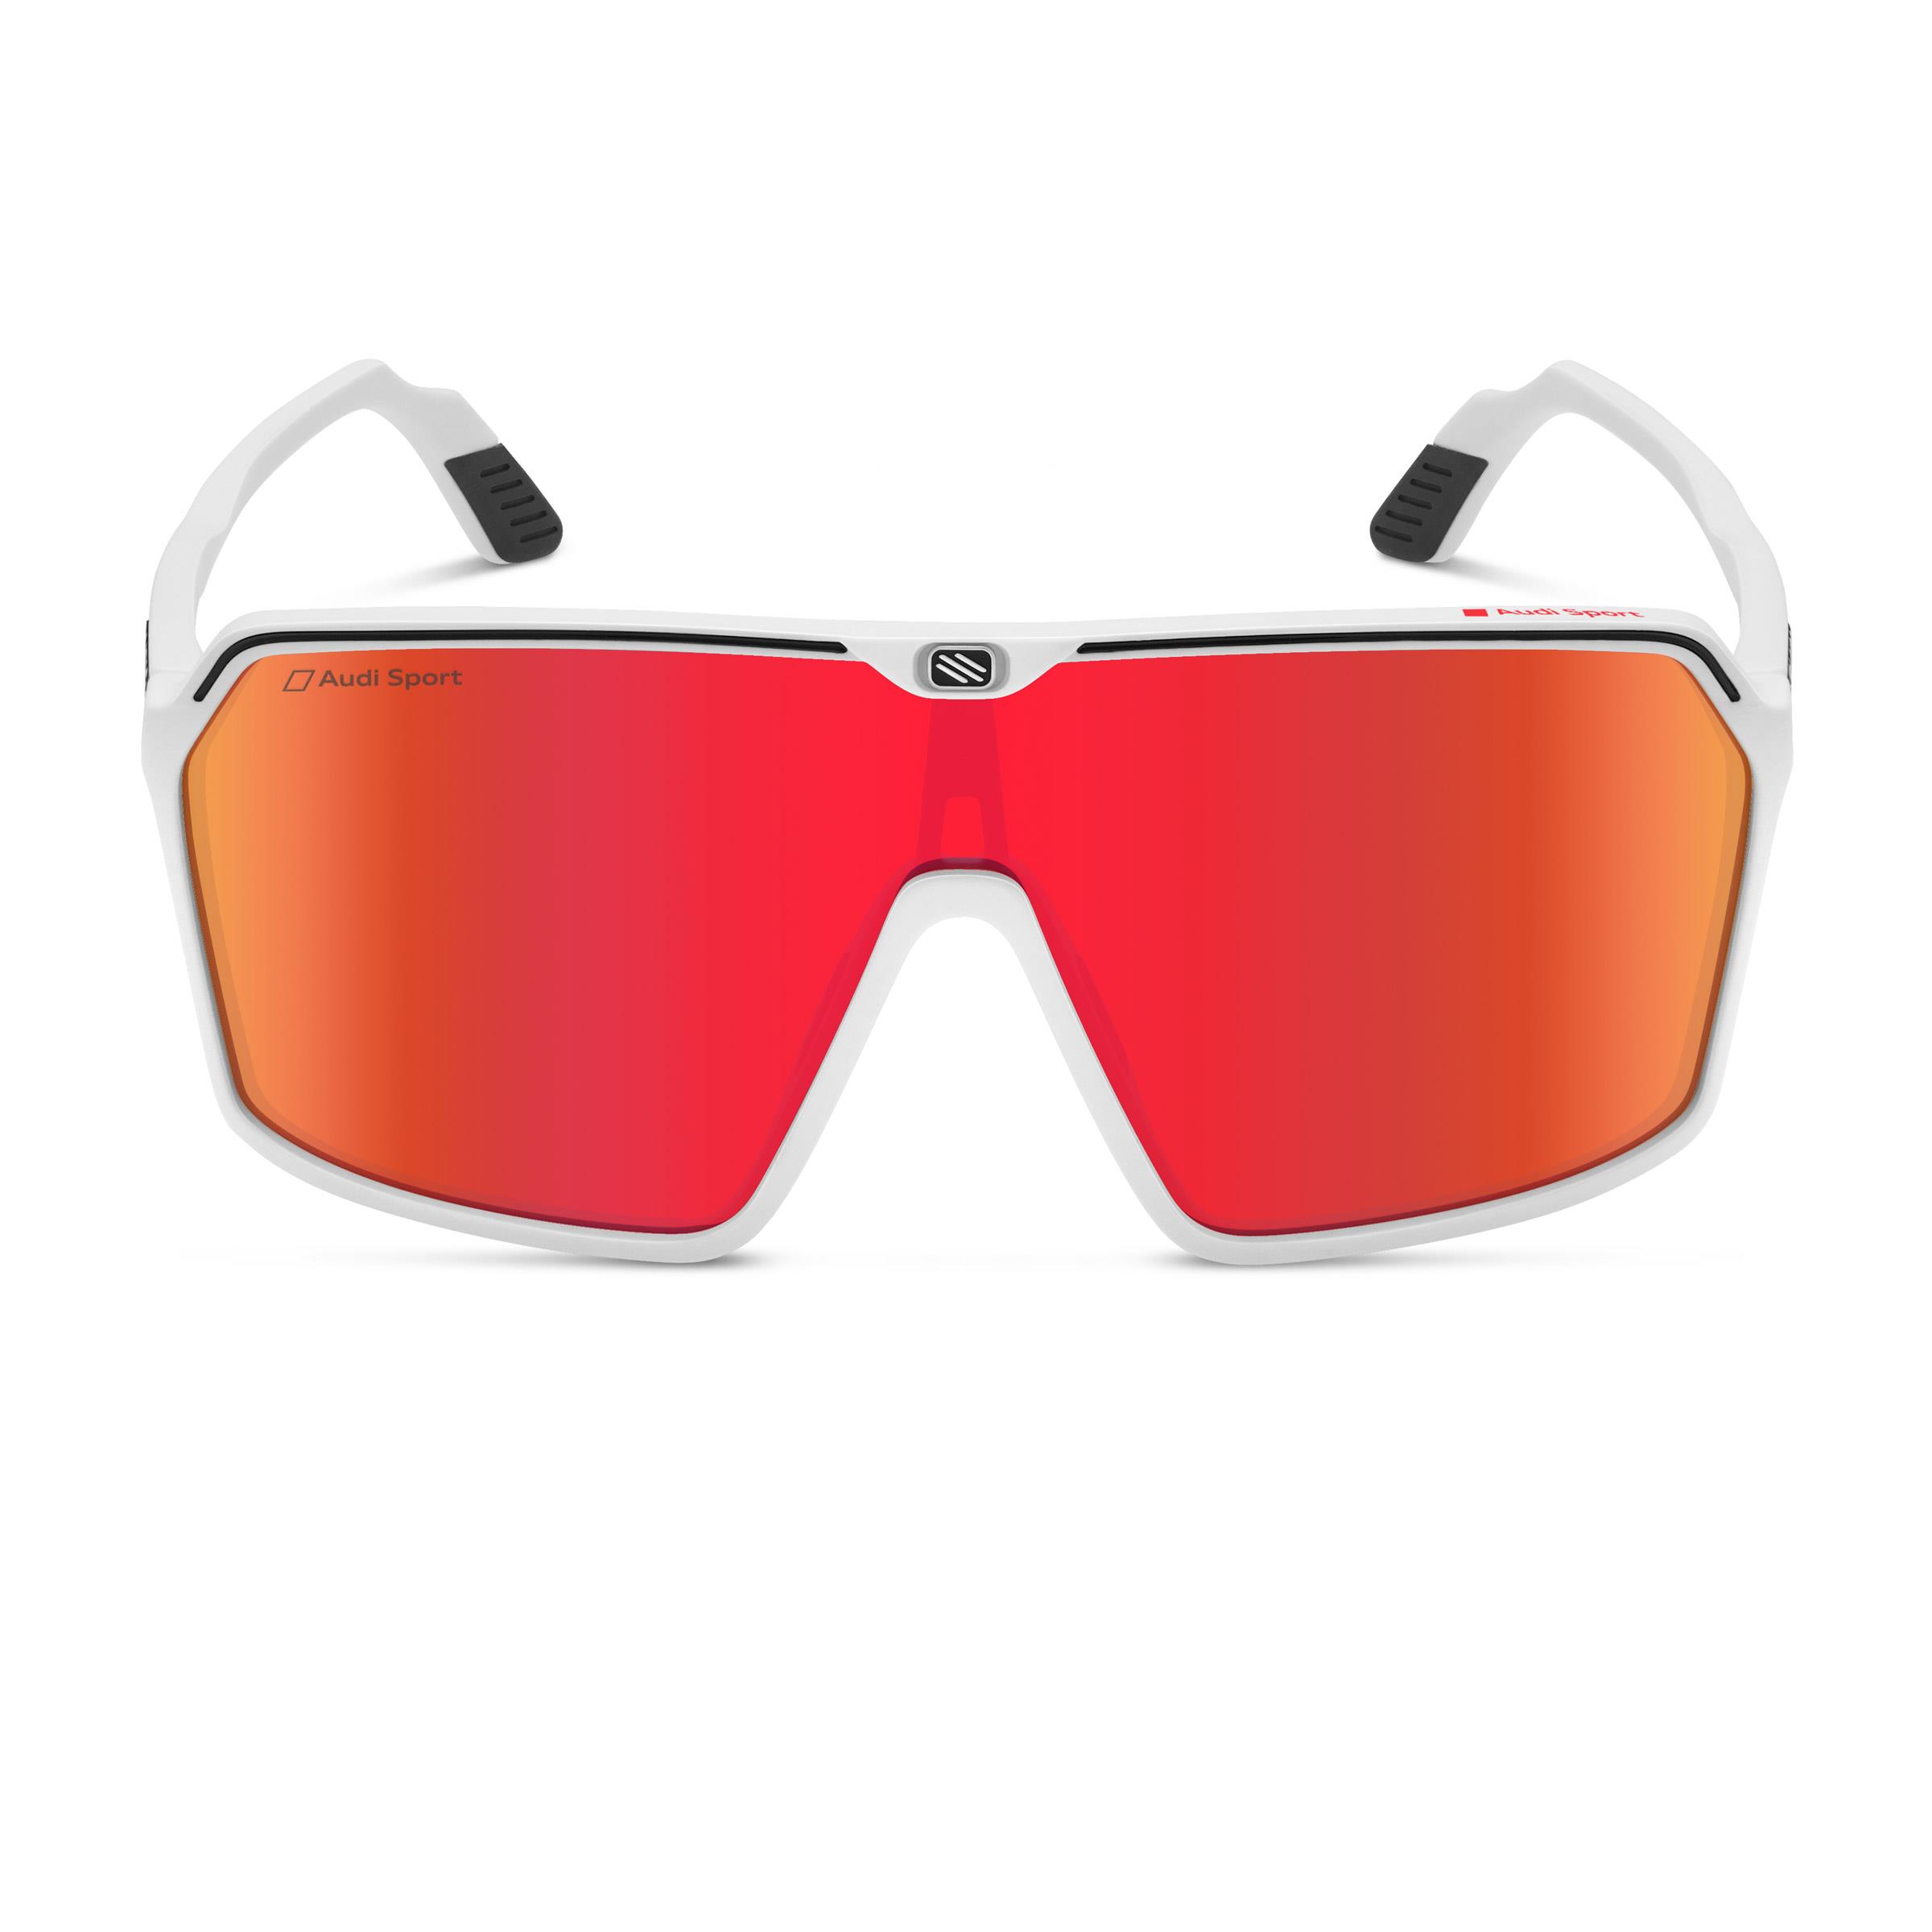 Audi Sport Sonnenbrille verspiegelt, weiß/rot